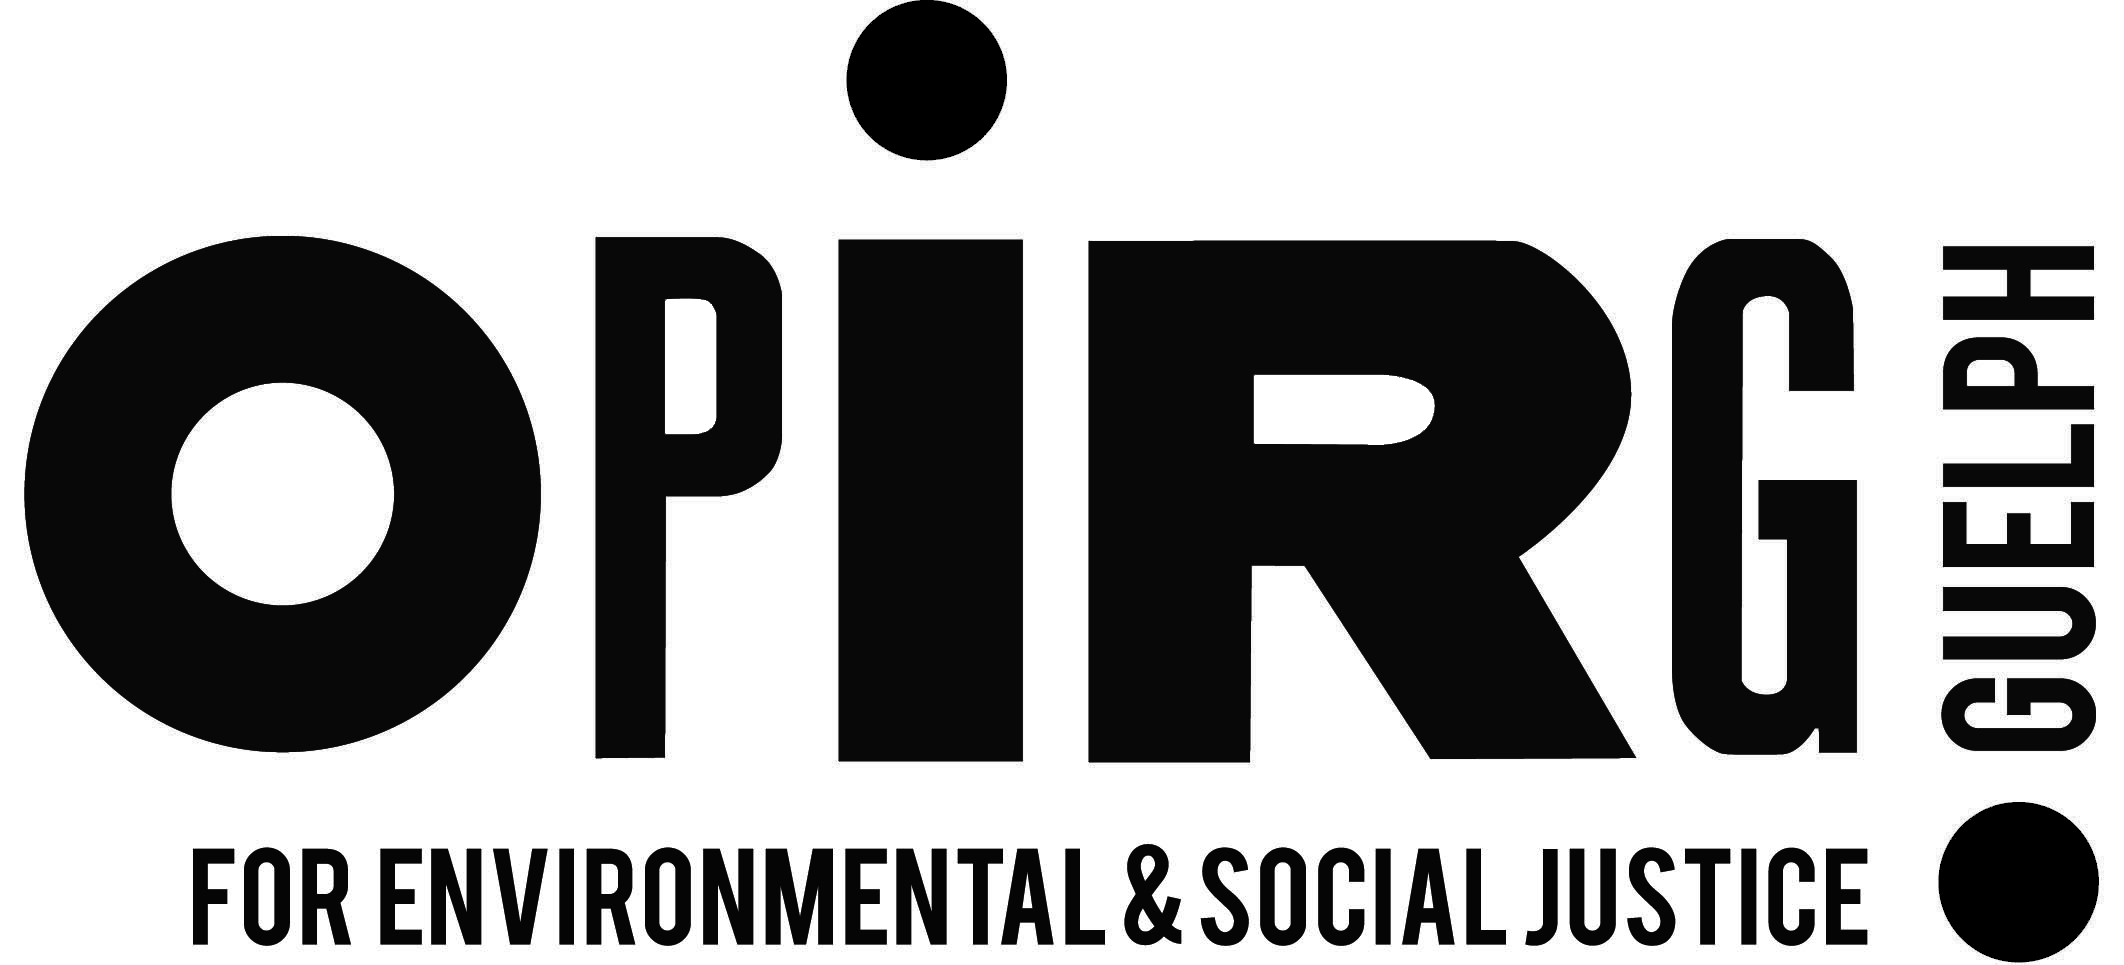 OPIRG Logo for print - blackbgt copy.png